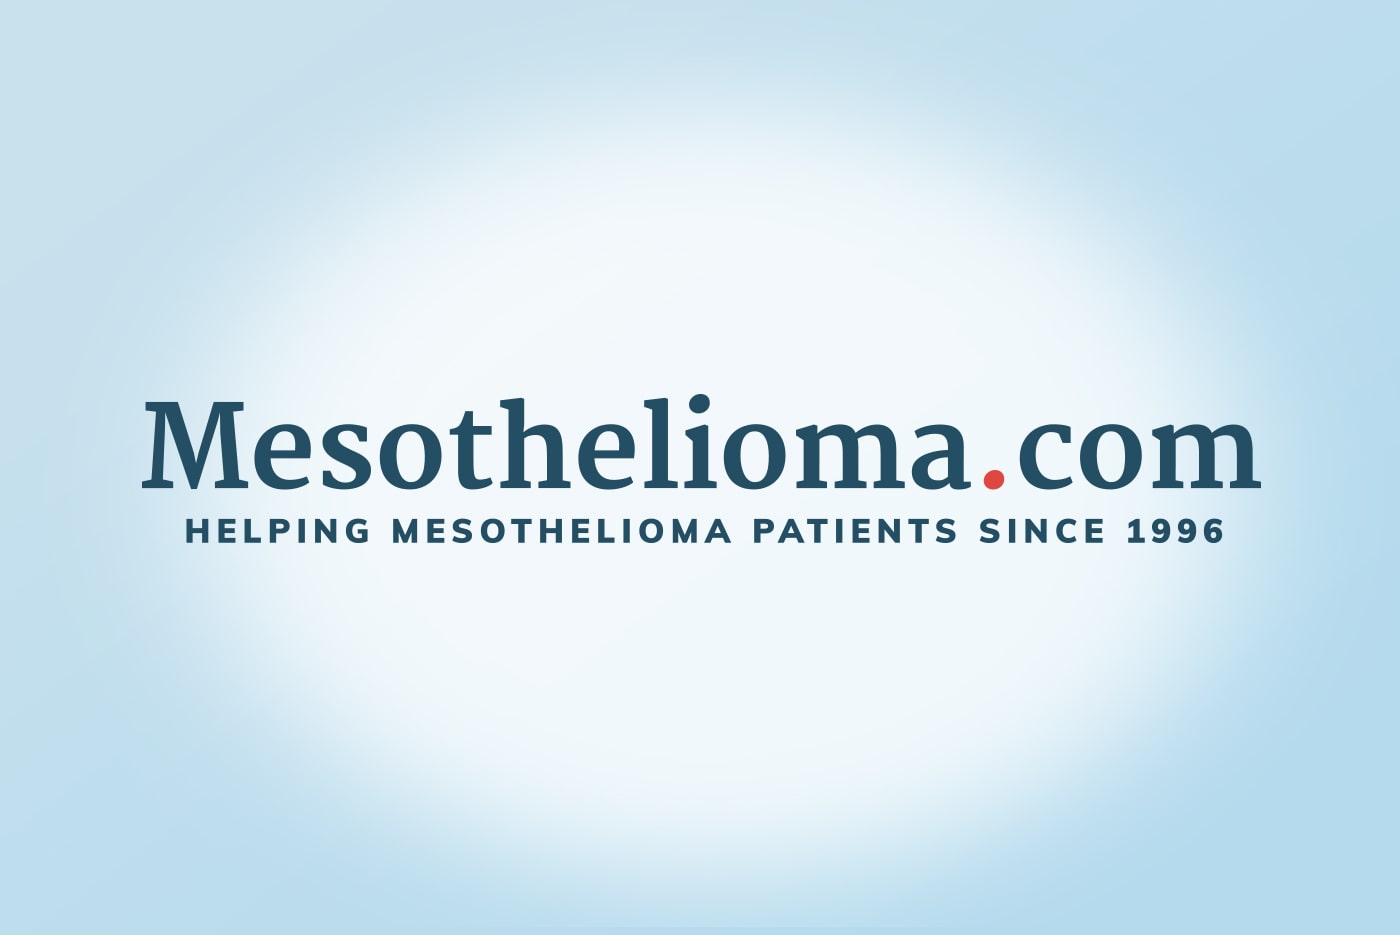 Mesothelioma.com logo